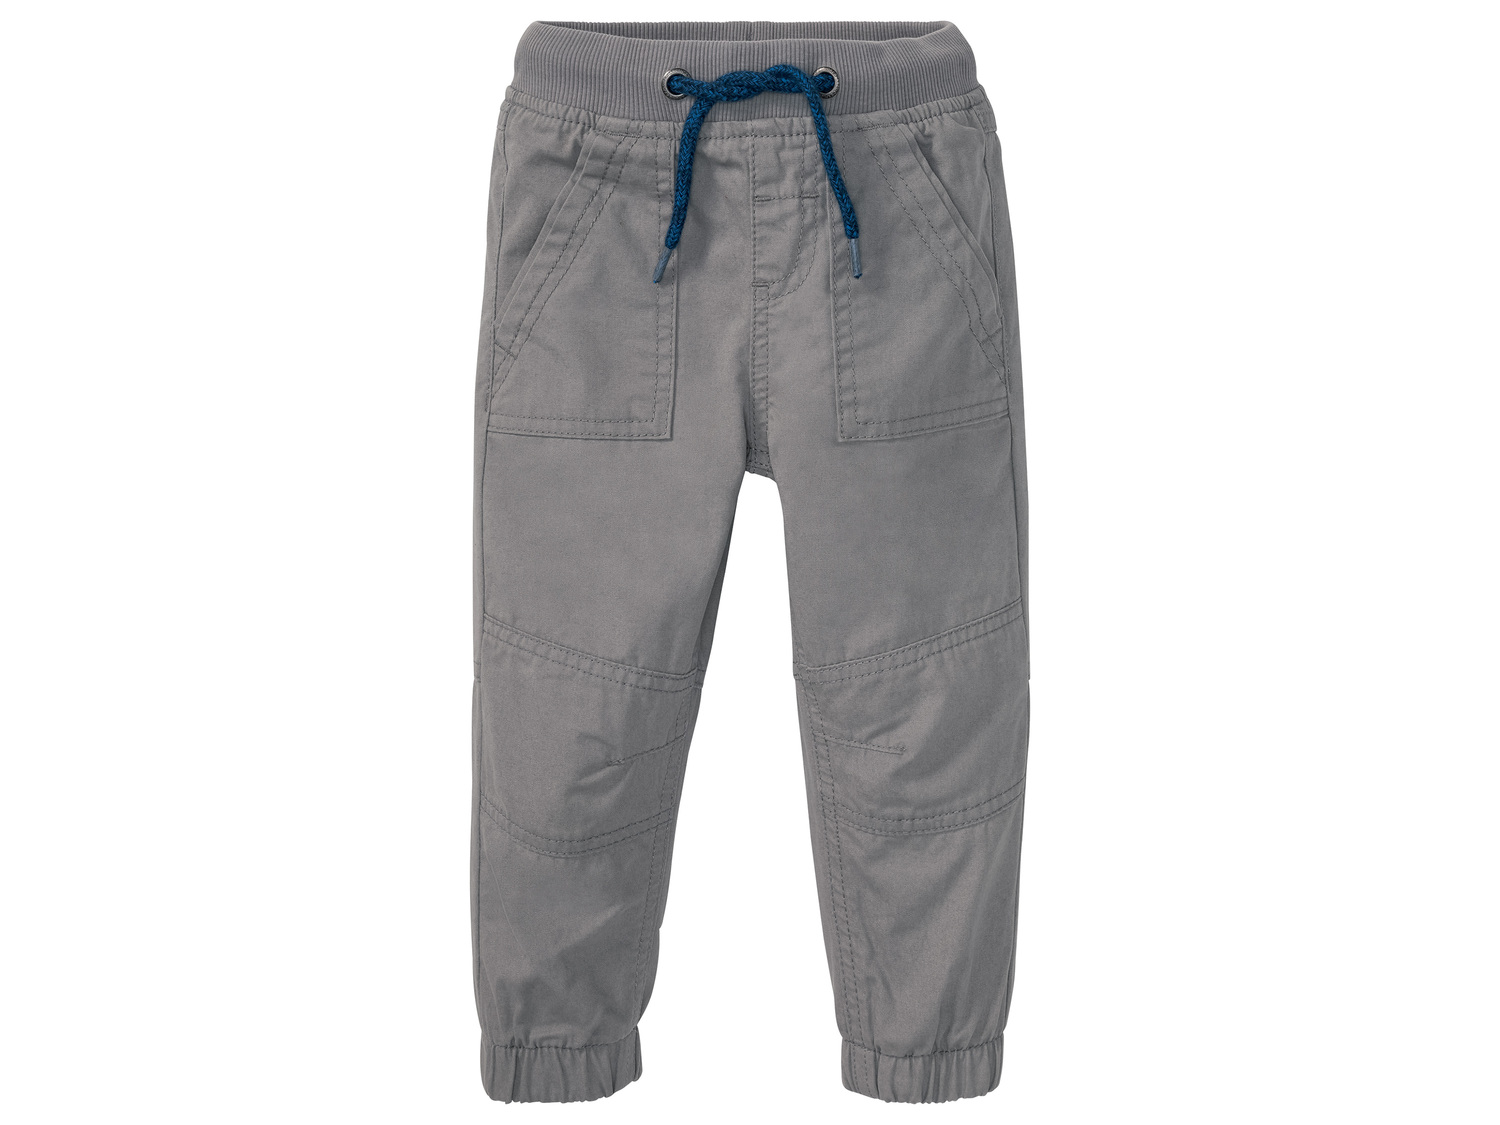 Pantalon thermique garçon , le prix 6.99 € 
- Du 86 au 116 cm selon modèle.
- ...